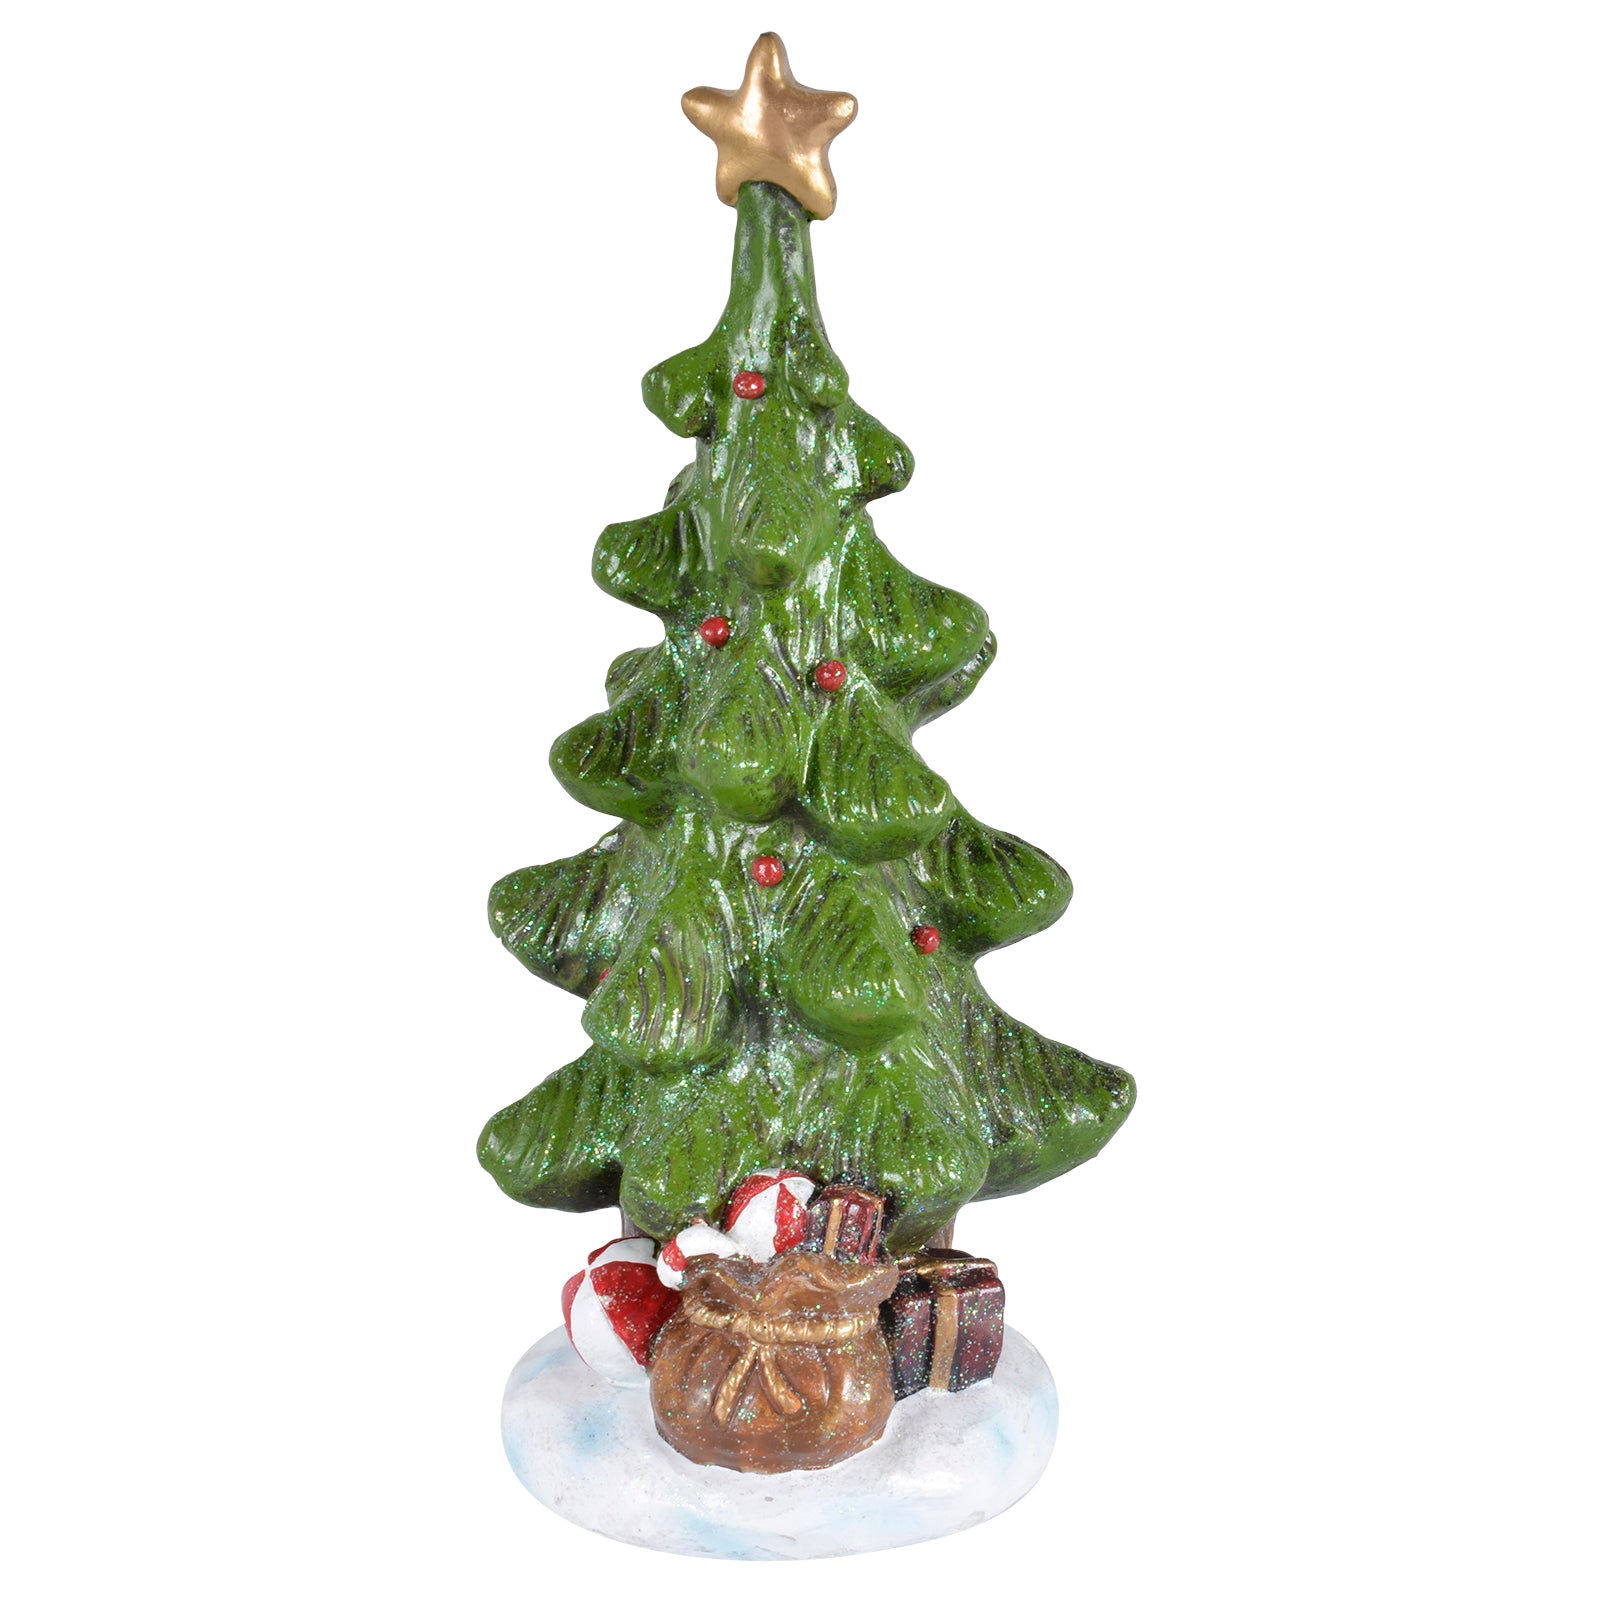 Mr Crimbo Christmas Tree Resin Ornament Glitter Base - MrCrimbo.co.uk -XS4305 - 28cm -christmas decor